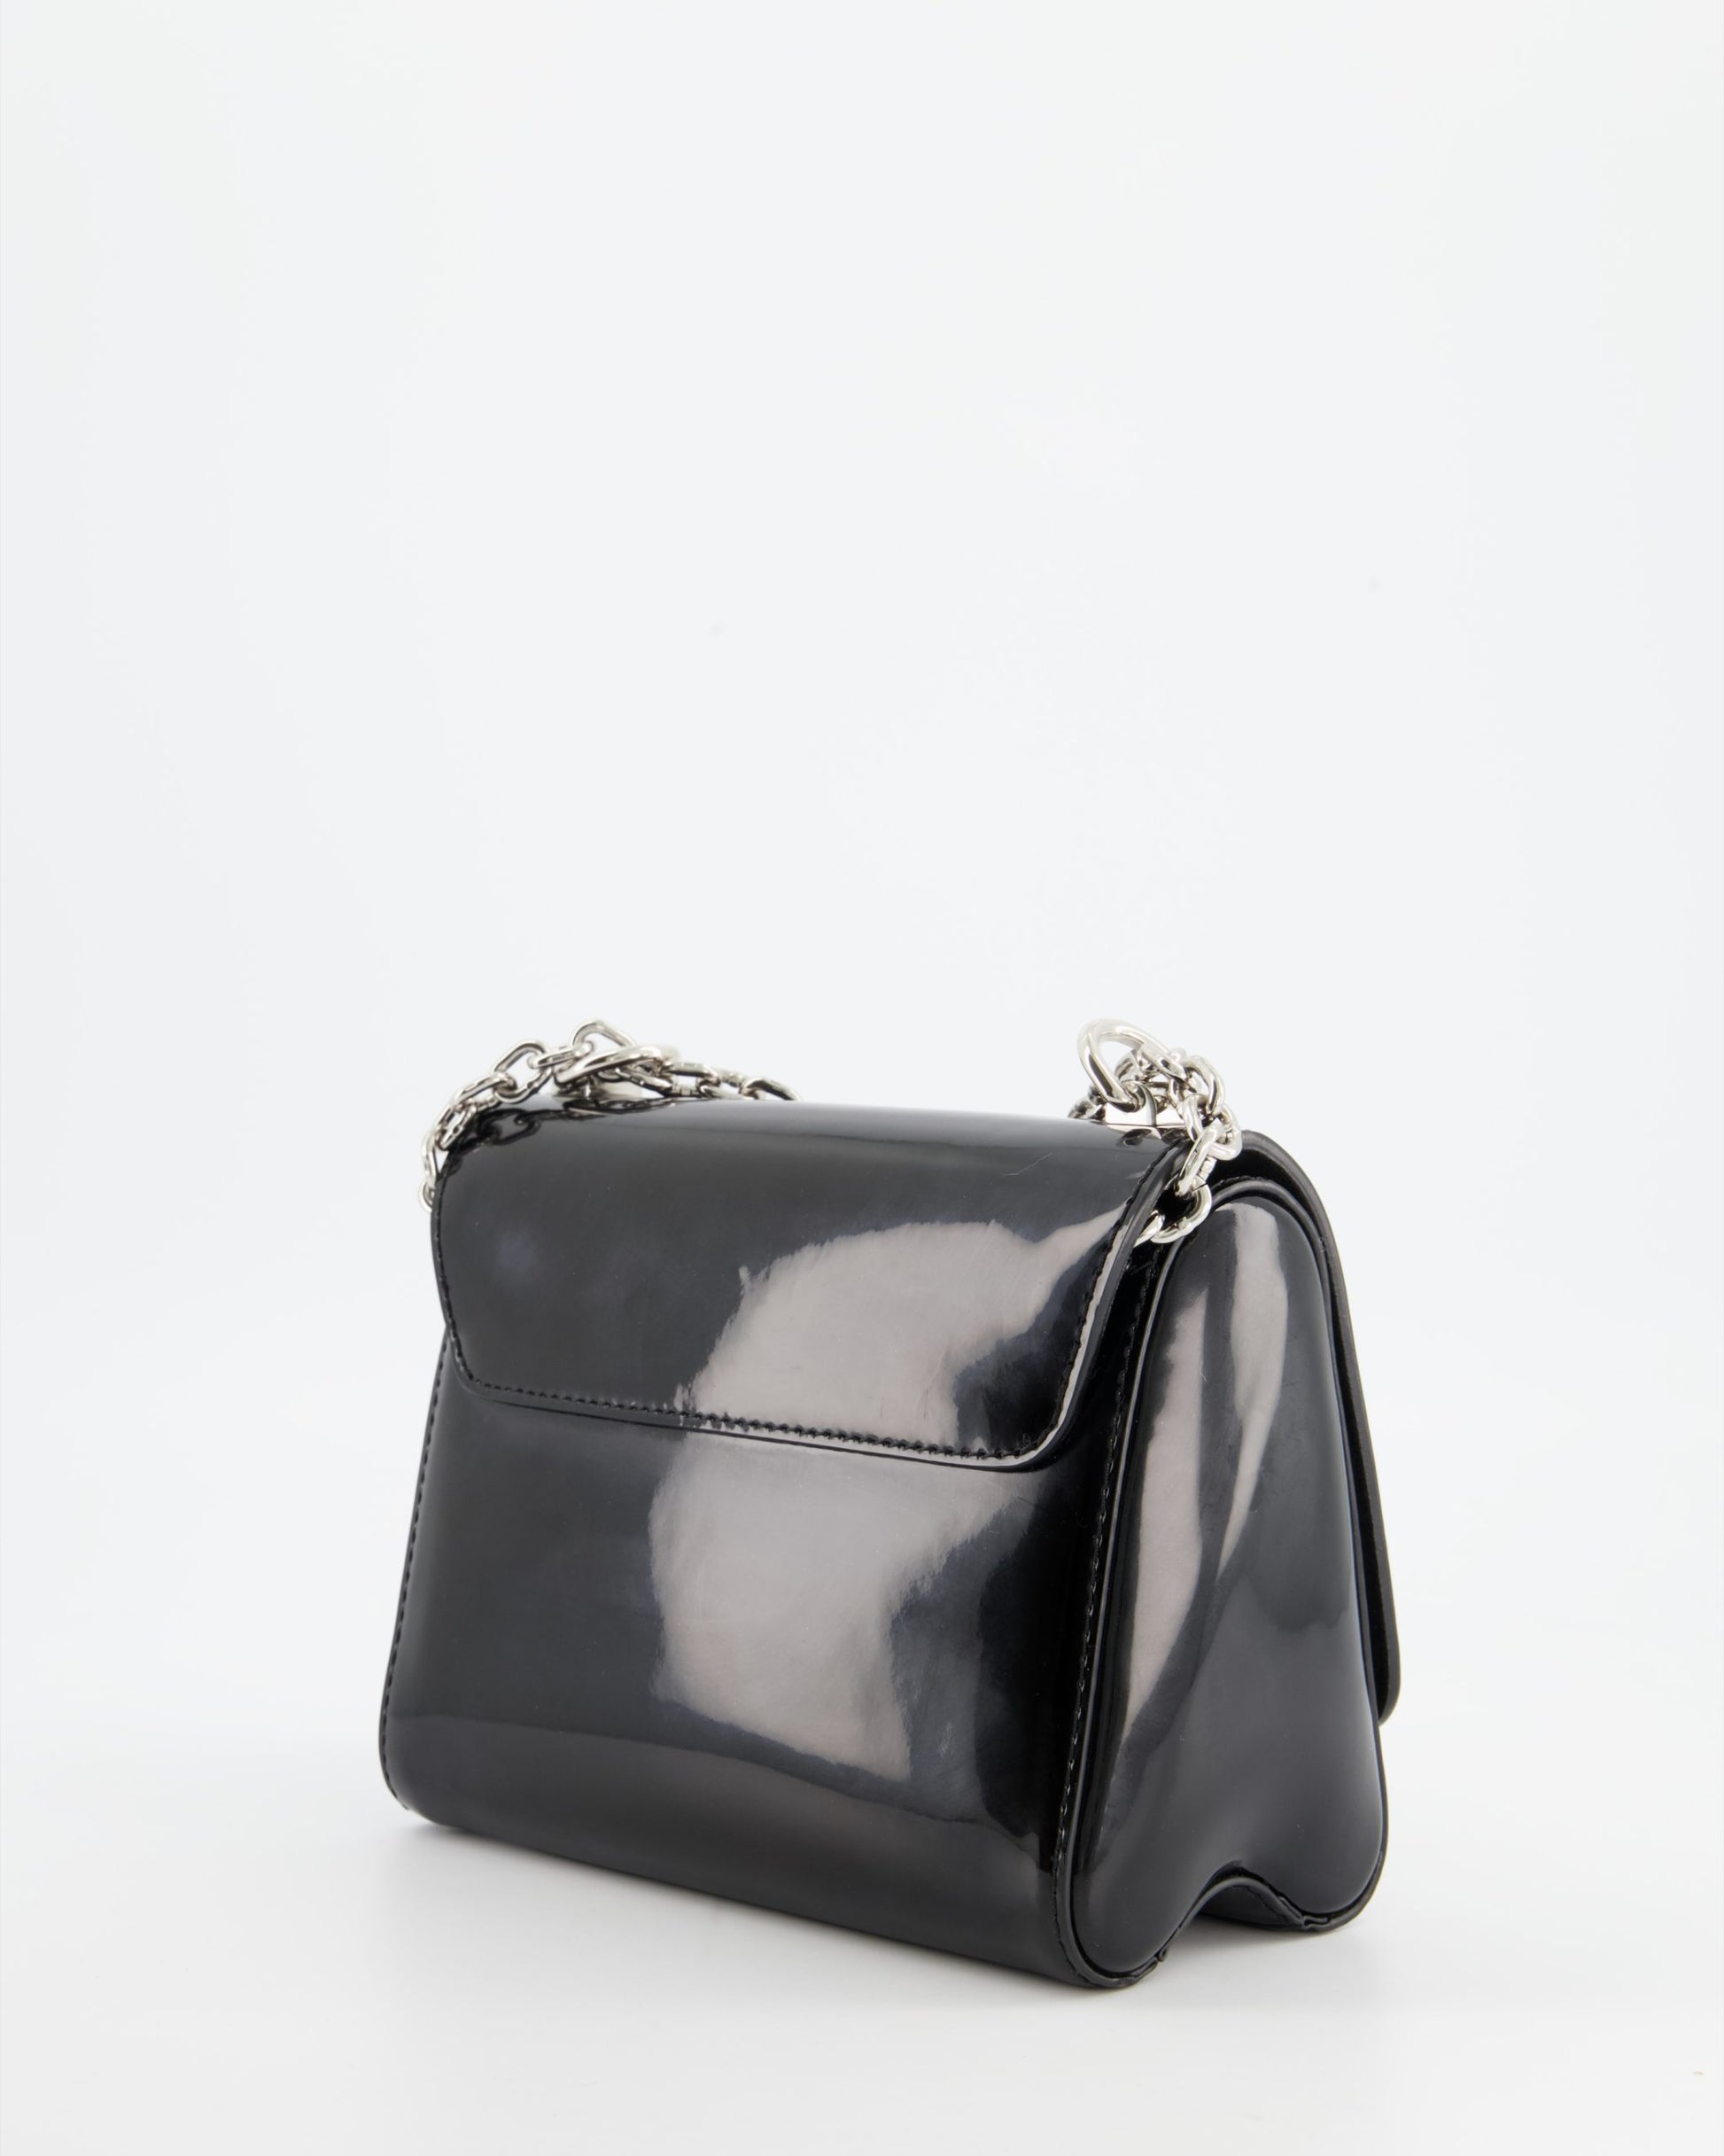 Louis Vuitton Twist Patent Shoulder bag in Black Patent leather - ShopStyle